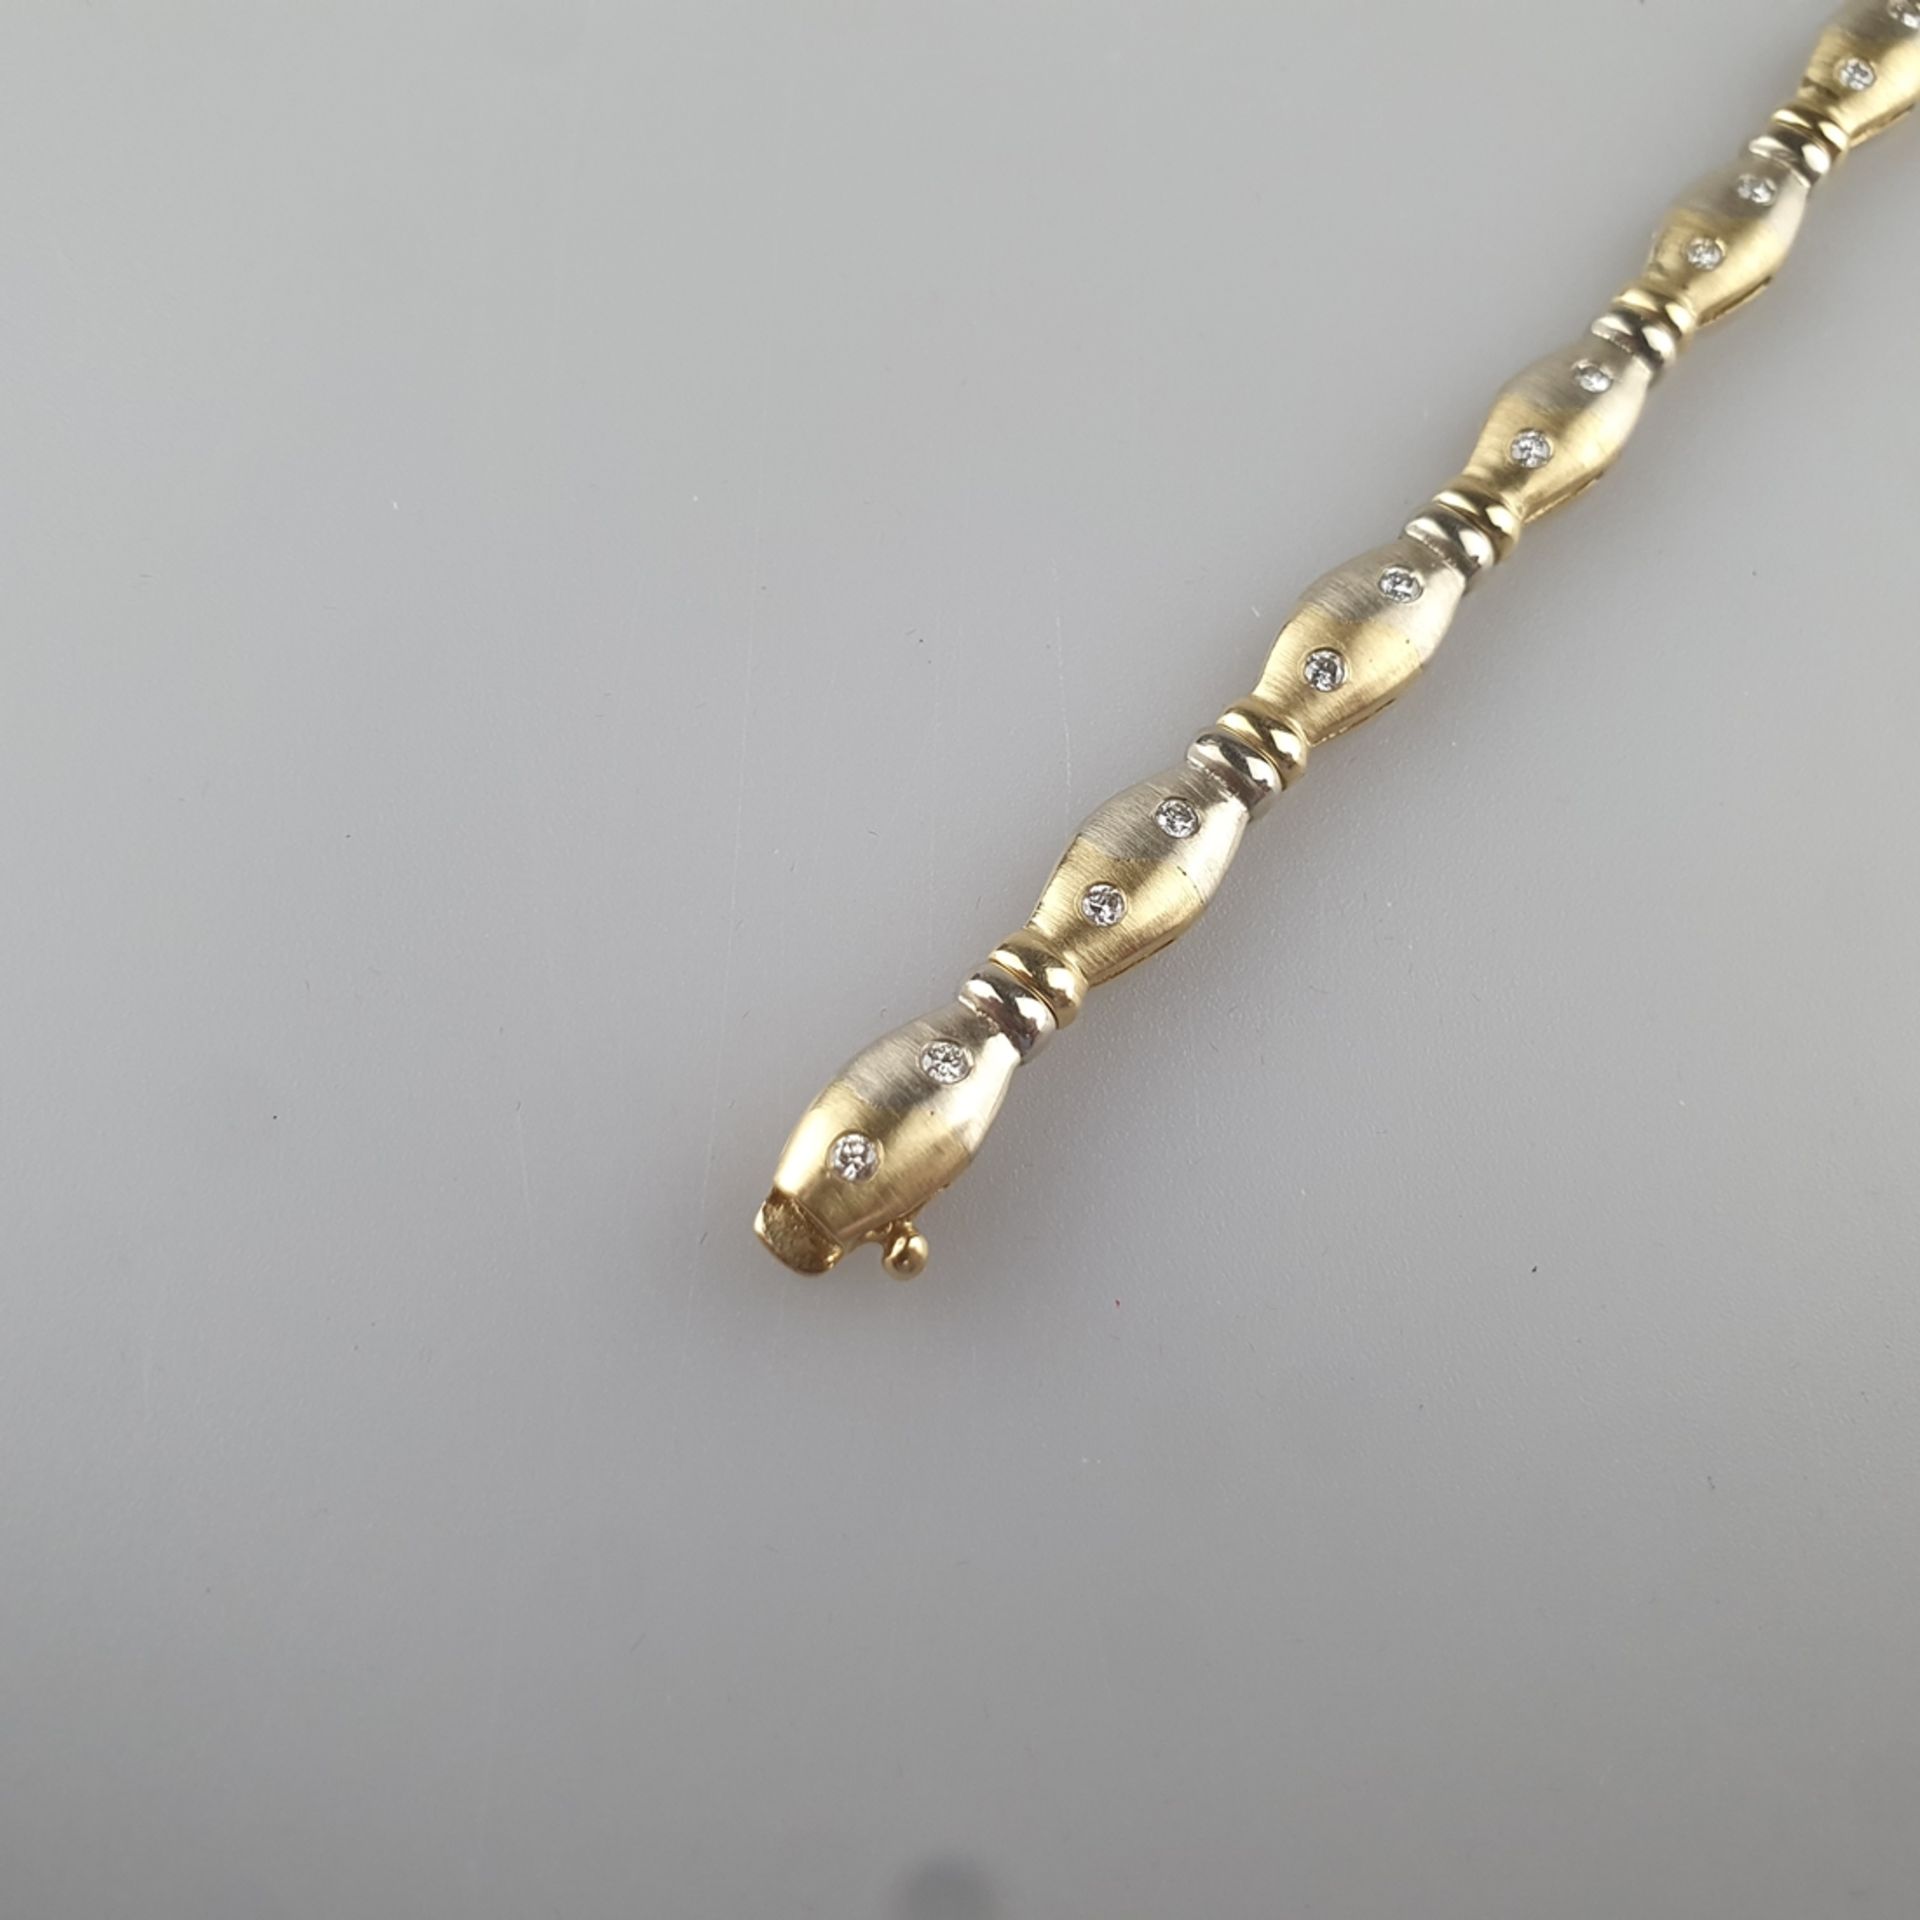 Bicolor-Diamantarmband - Gelb-/Weißgold 585/000 (14 K), gestempelt, ca. 6 mm breit, 11 Glieder bese - Image 2 of 5